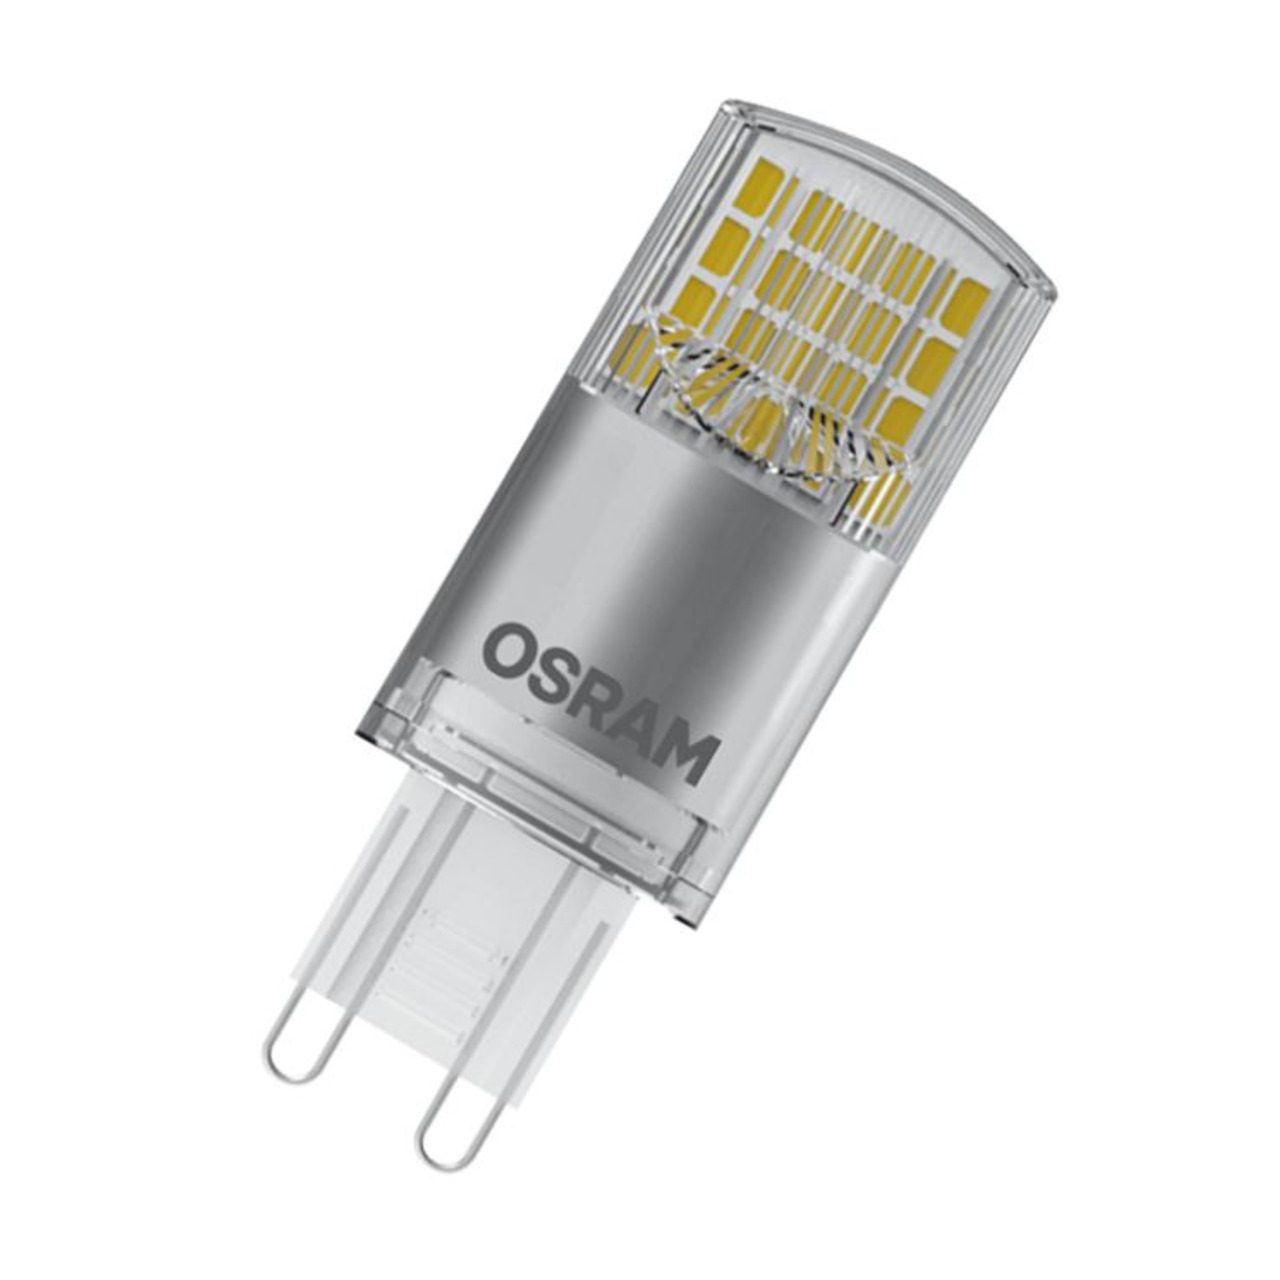 OSRAM 4-2-W-LED-Lampe T20- G9- 470 lm- neutralweiss- 4000 K unter Beleuchtung